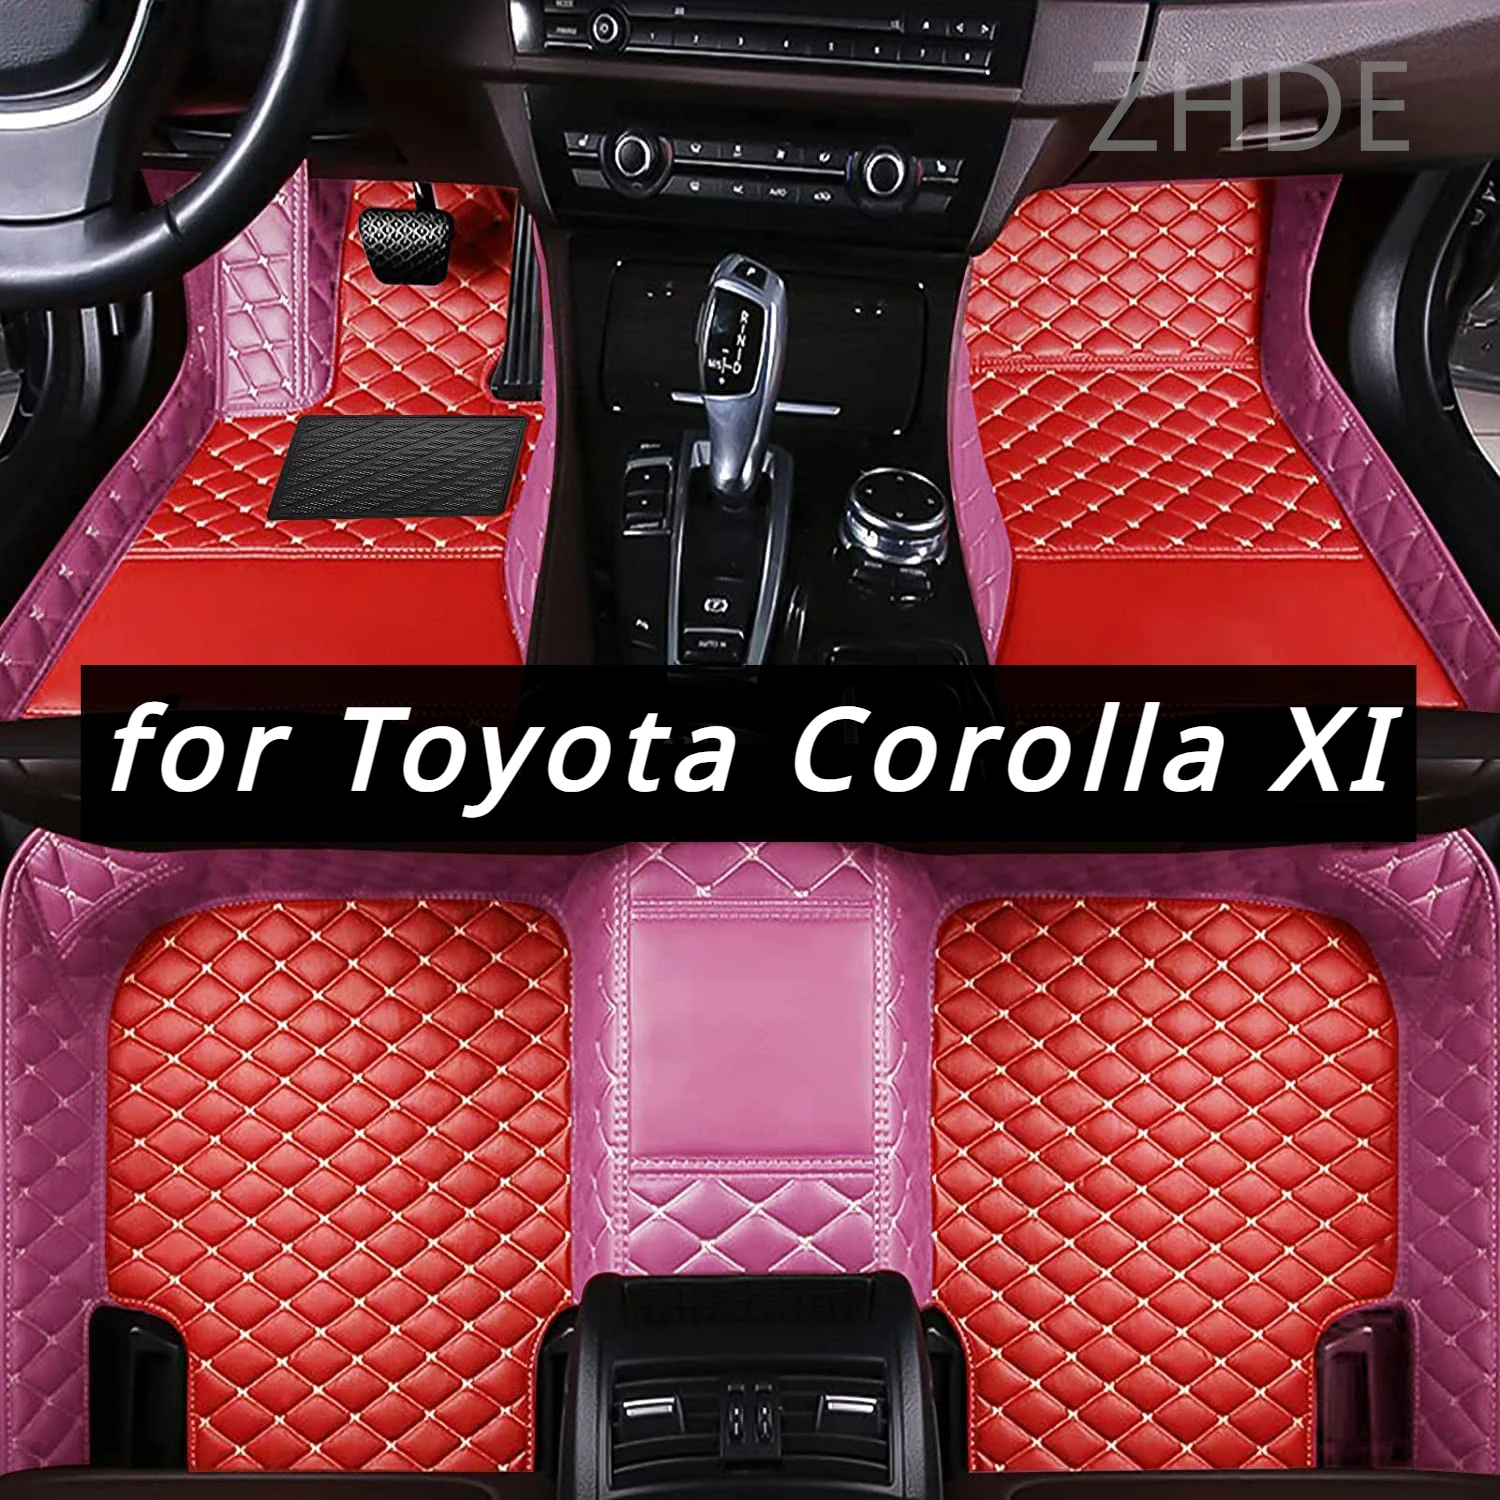 

Подходит для Toyota Corolla XI 11th E170 2018 2017 2016 2015 2014, автомобильный напольный коврик, защитный чехол, кожаный ковер, украшение